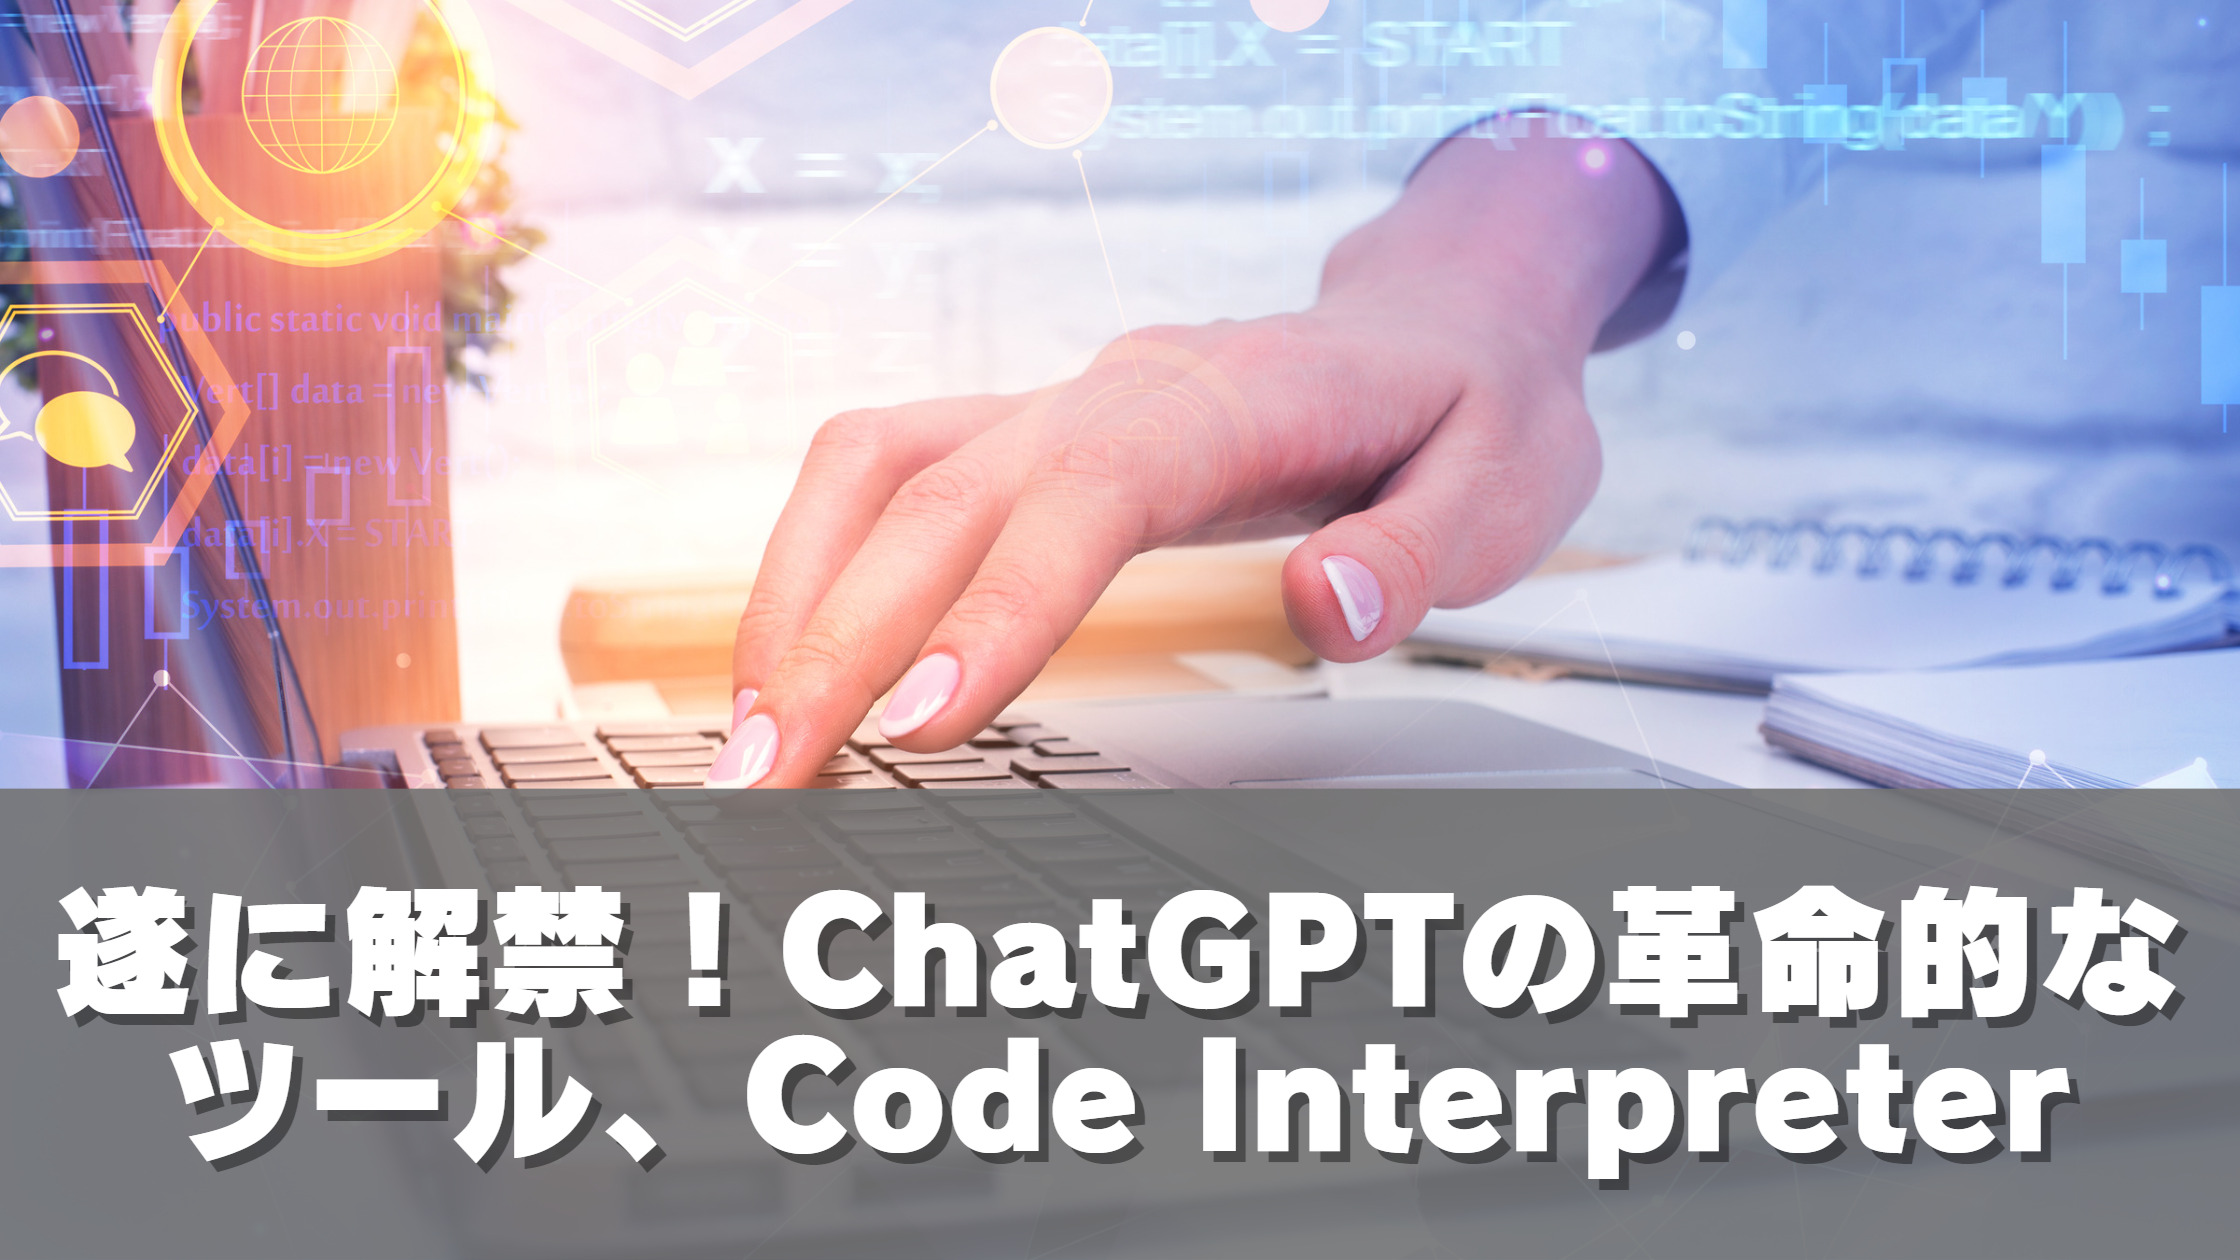 遂に解禁、ChatGPTの革命的なツール、Code Interpreter